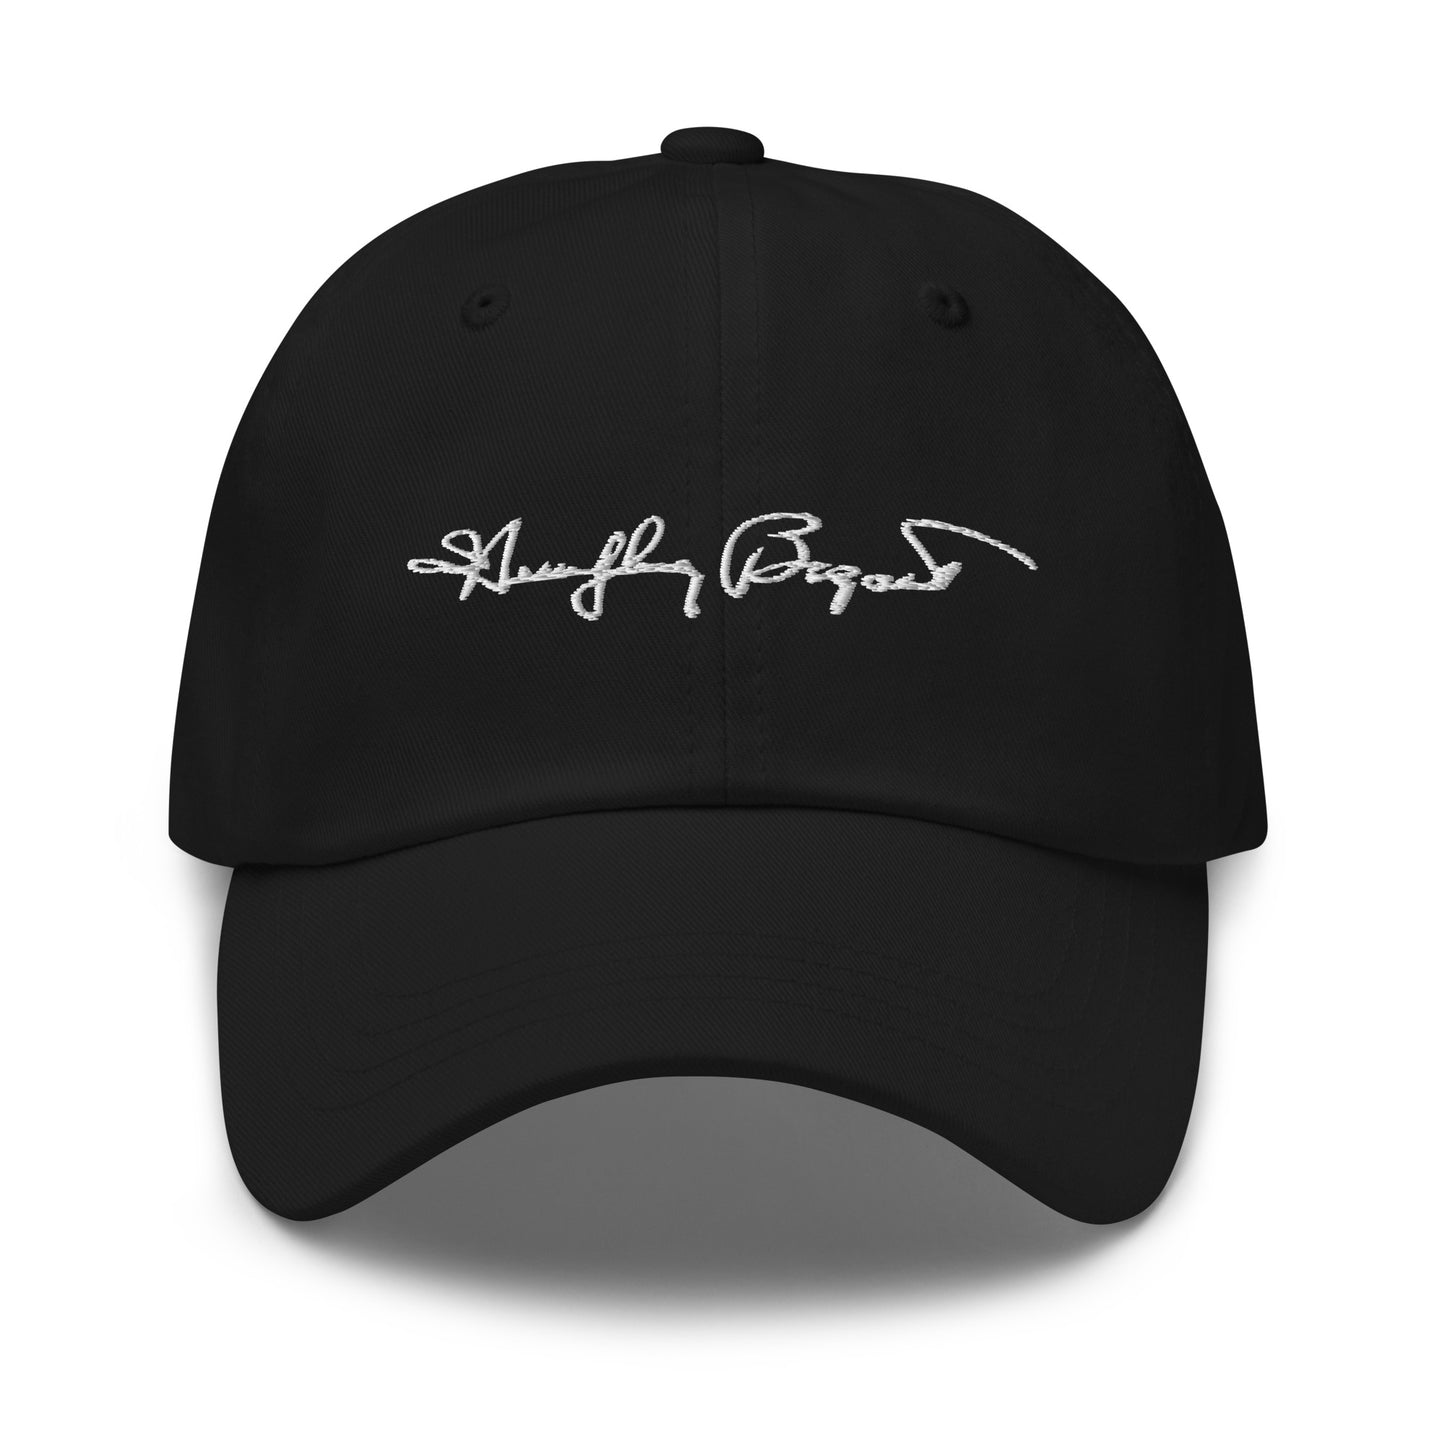 Bogart Signature Hat (Black)